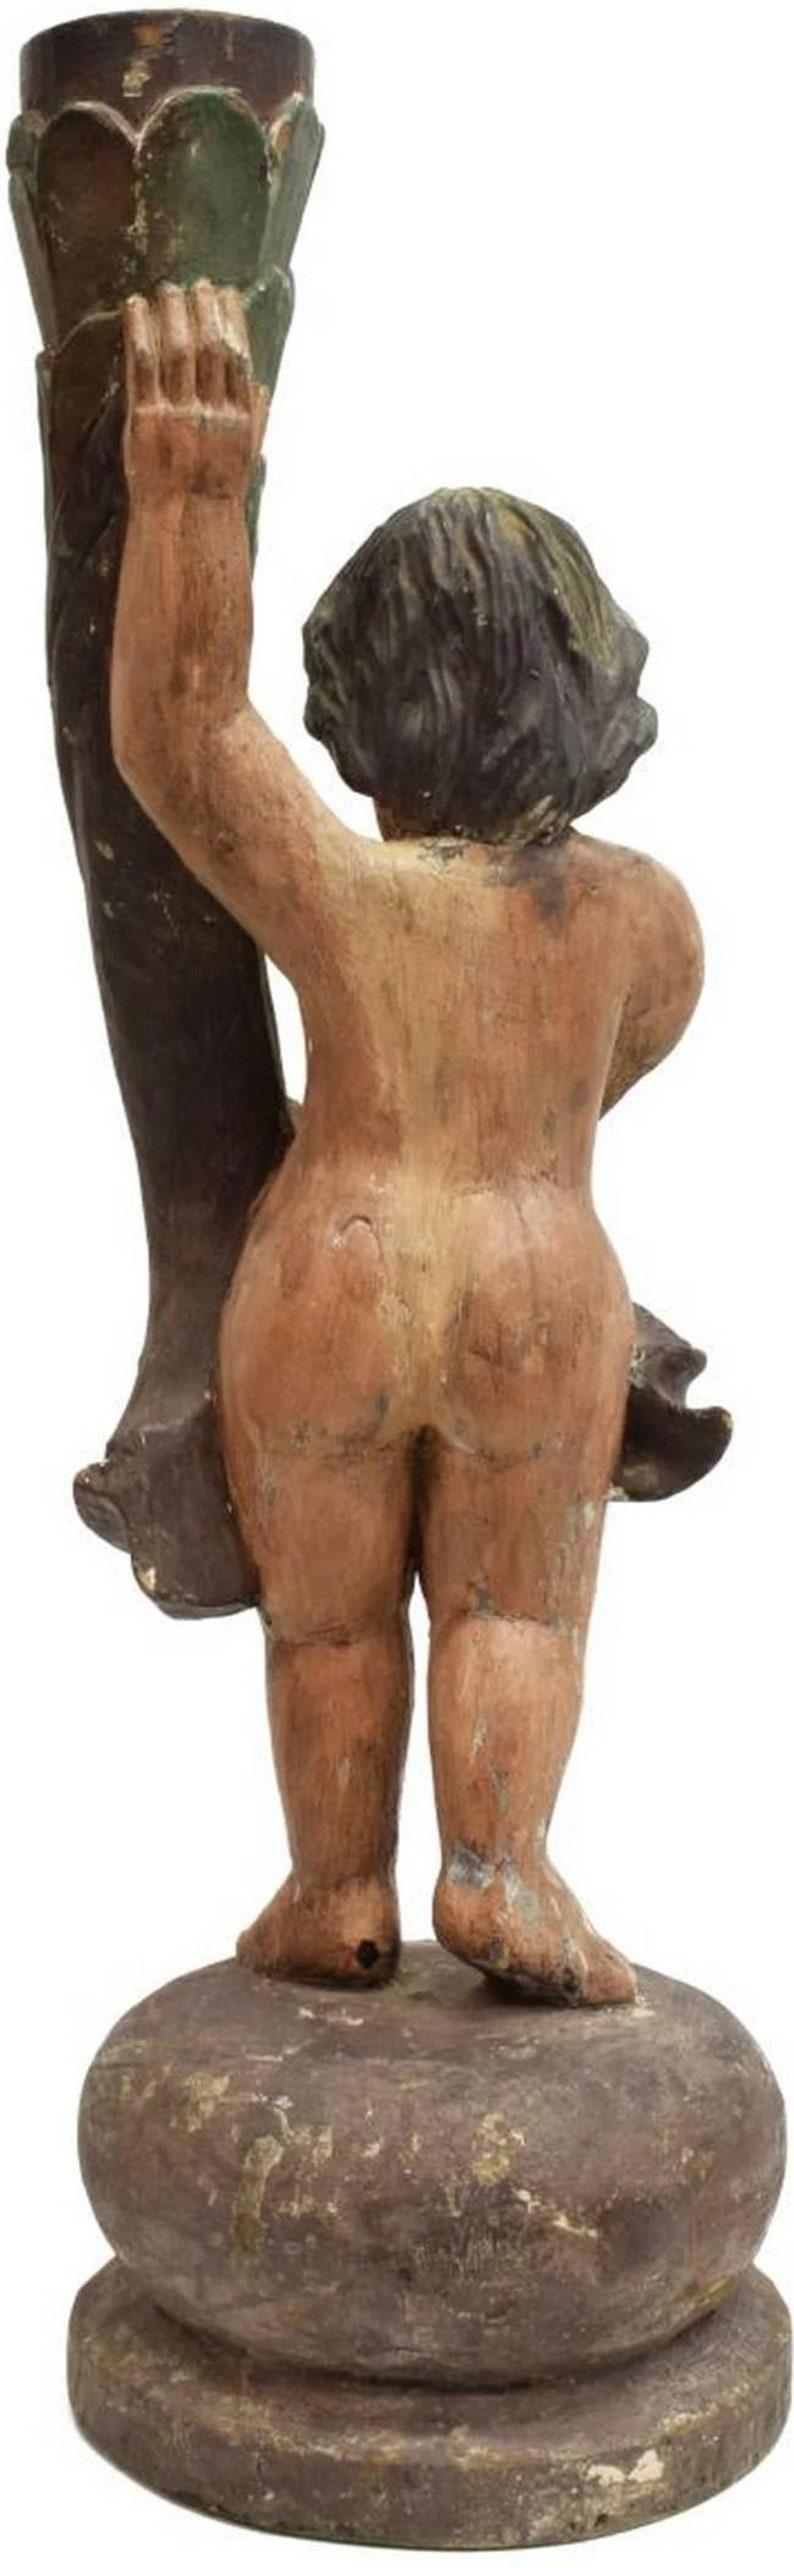 Rare torchère à poteau de Newel en bois sculpté et peint à la main, datant du 18e siècle, de l'époque coloniale espagnole. Cette antiquité de 250 ans, tout à fait originale, est modelée comme un putti (ange - garçon - chérubin), avec des yeux